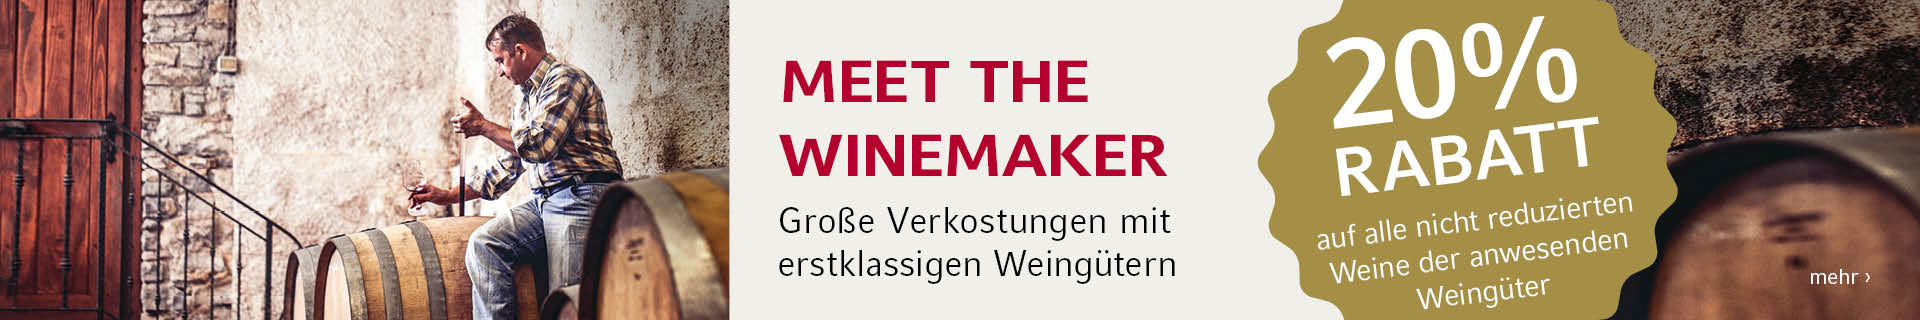 Meet the winemaker